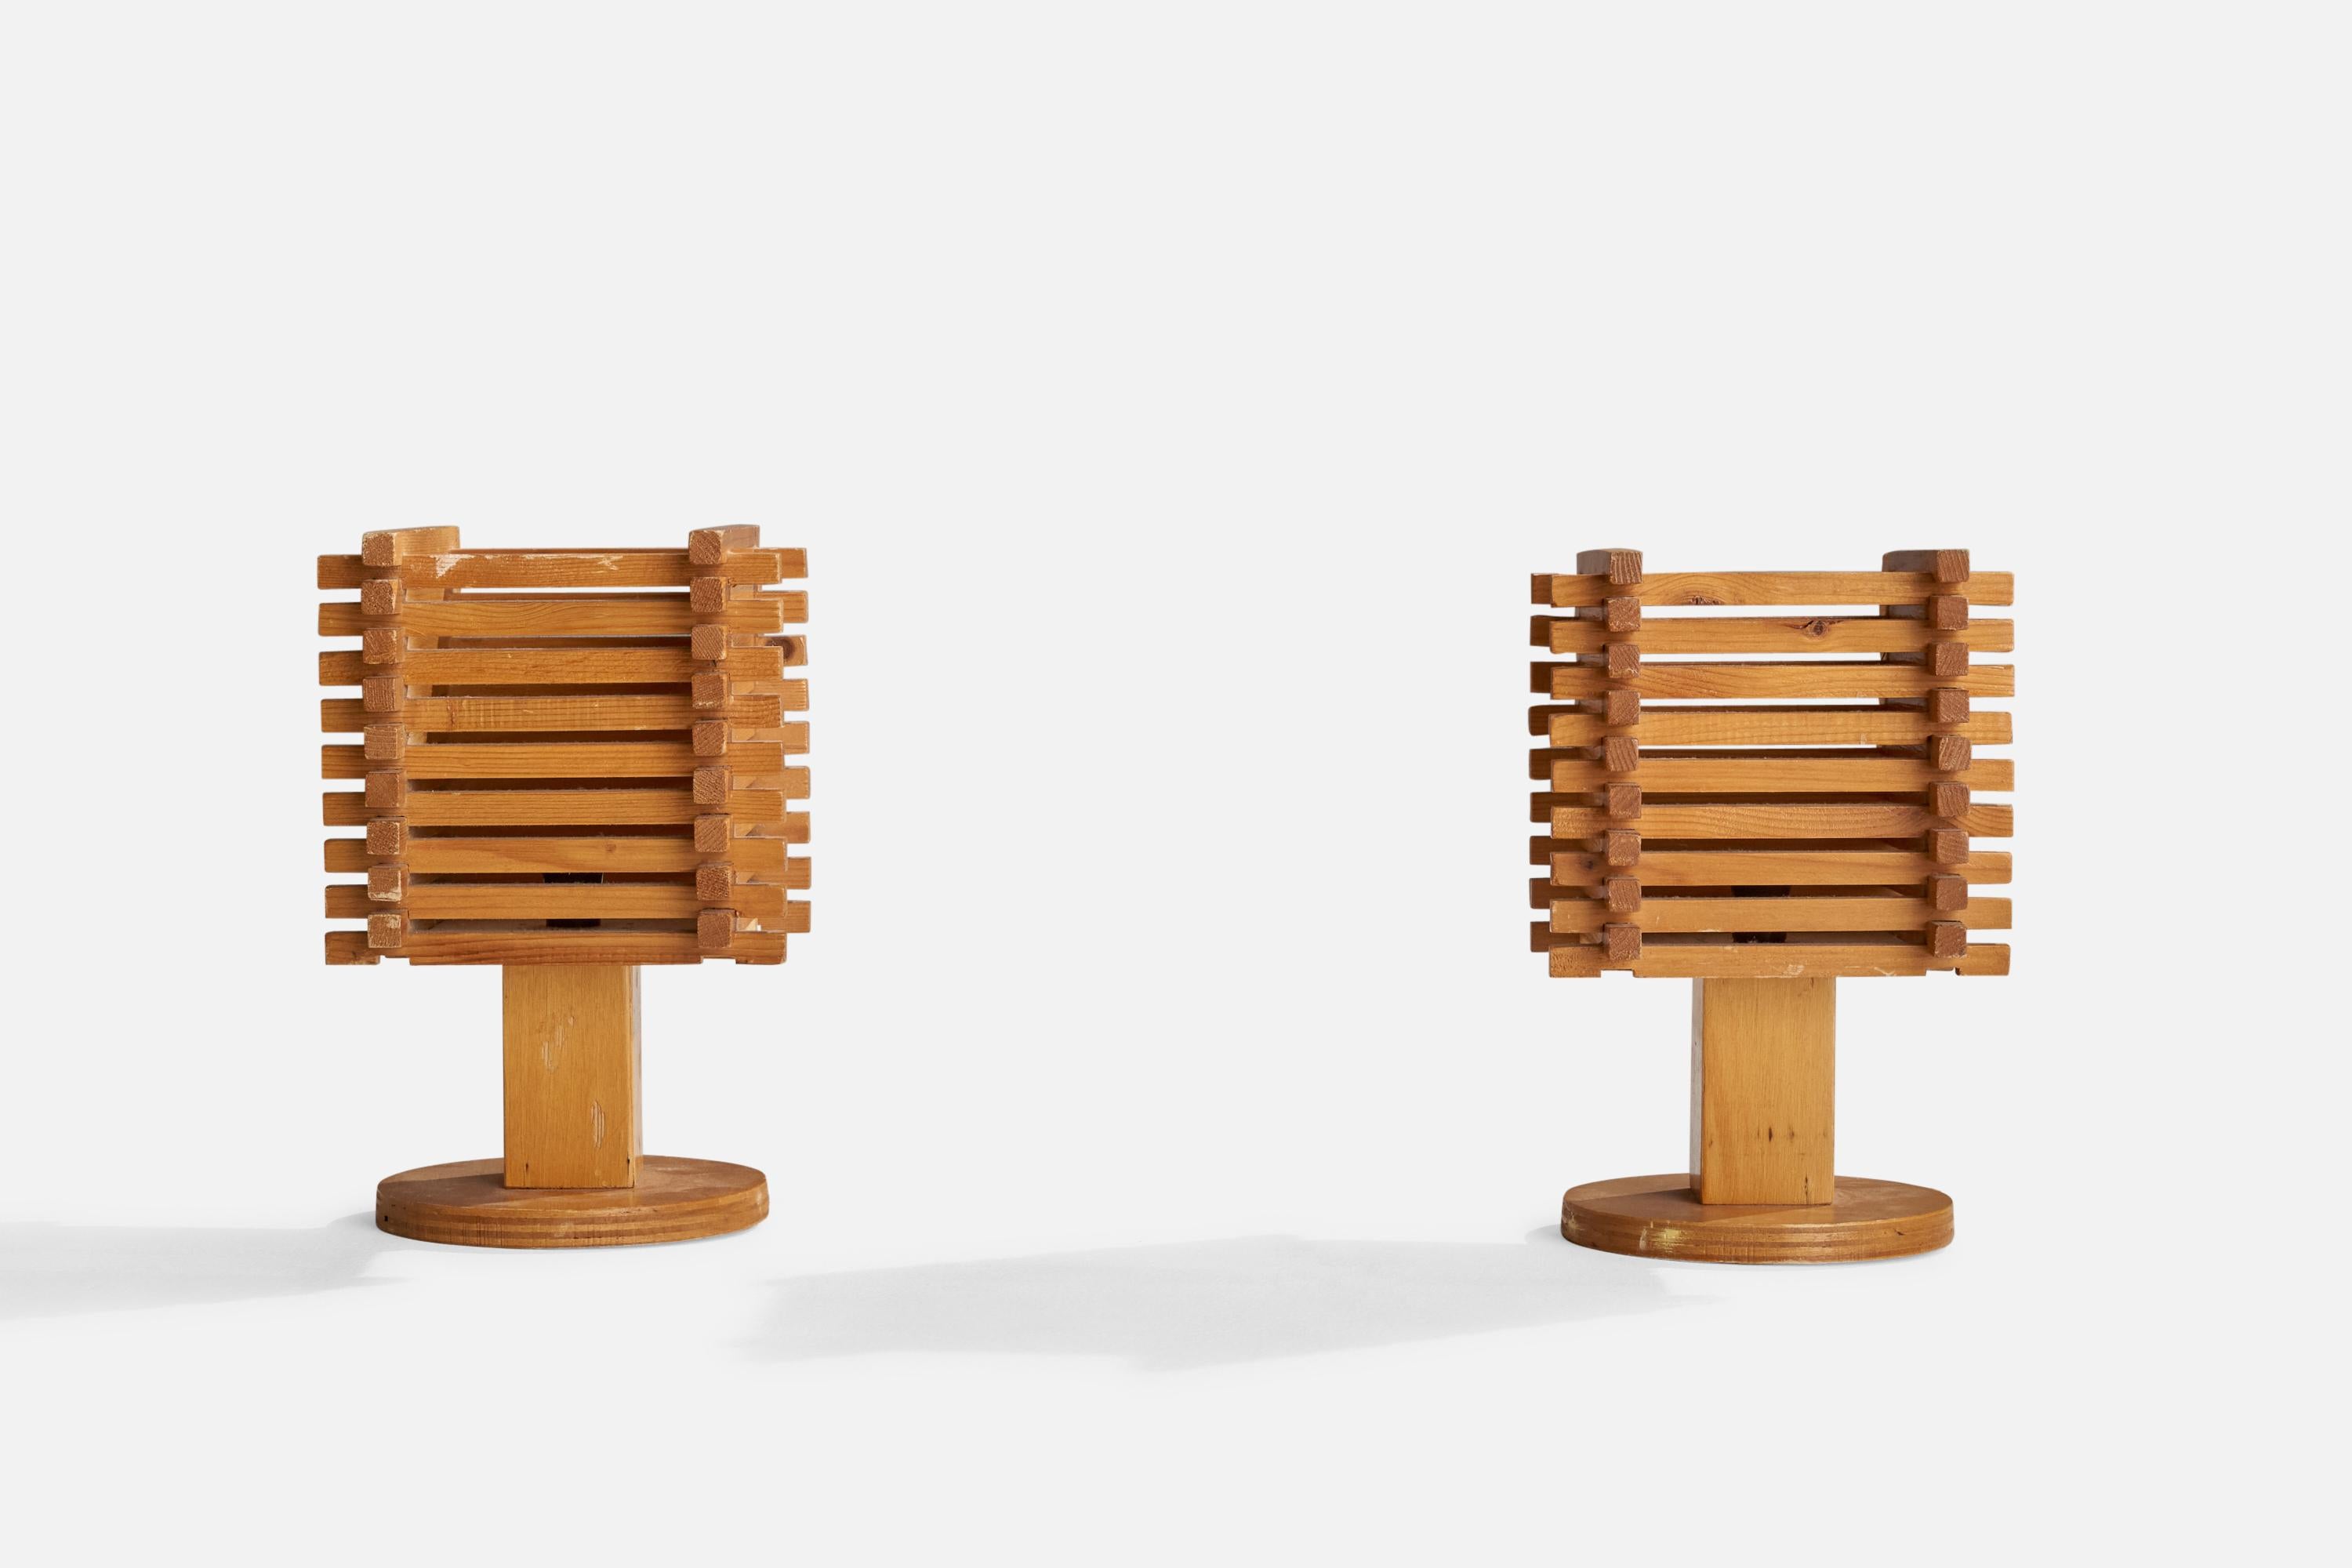 Paire de lampes de table en bois conçues et produites en Italie, C.C., années 1960.

Dimensions hors tout (pouces) : 11